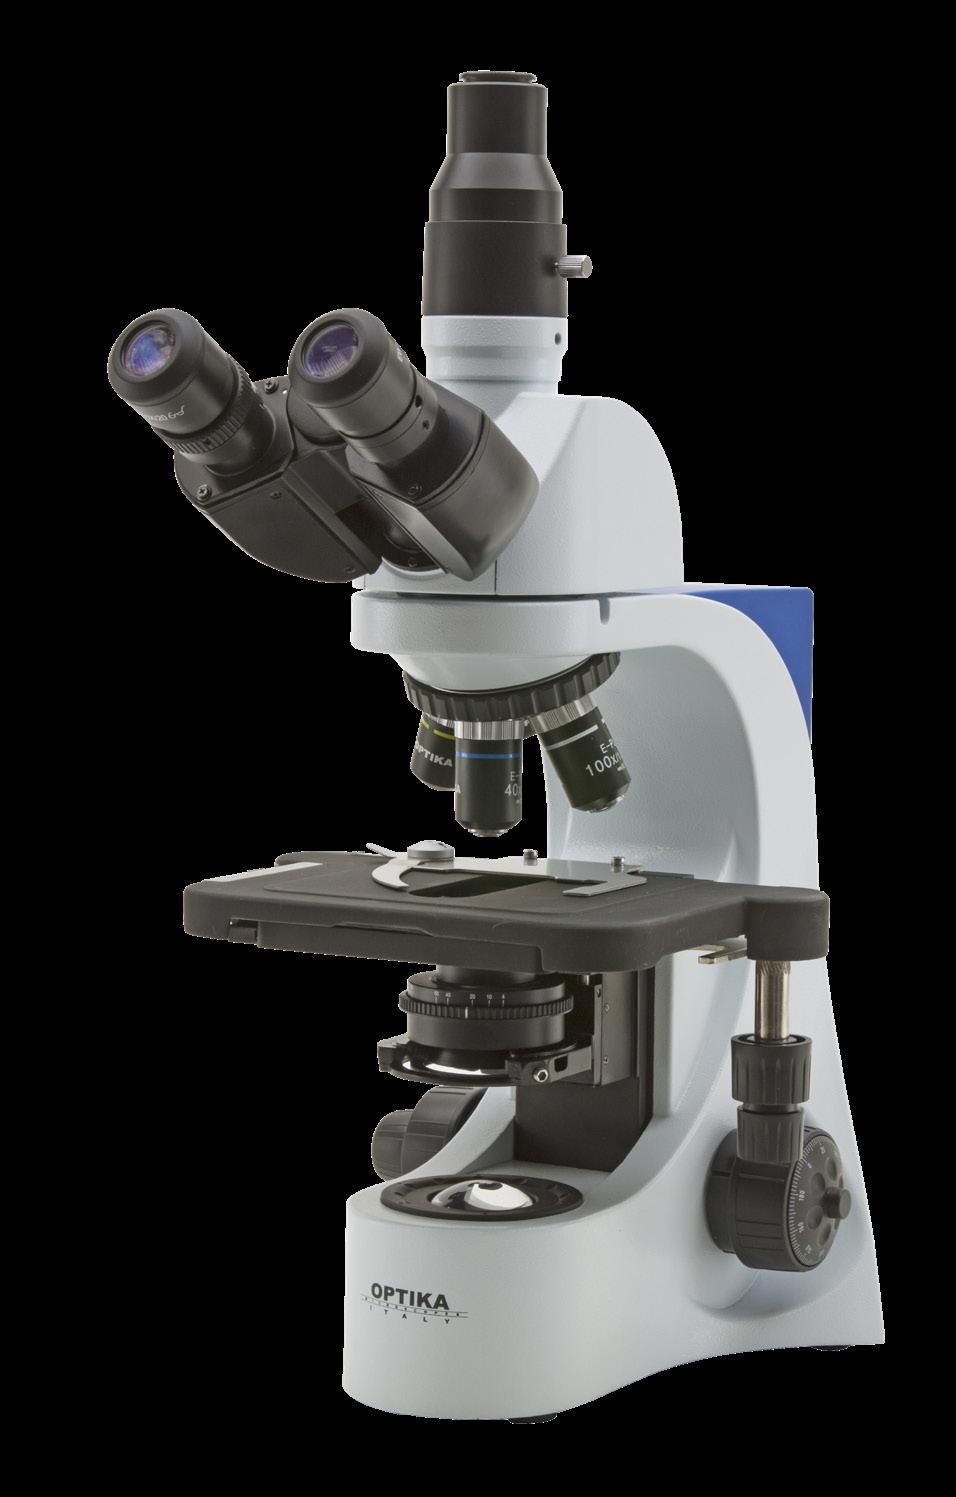 Biologico Training Microscopio Biologico Trinoculare B-383PLi obiettivi E-PL IOS 301333 Microscopio ad uso didattico e di laboratorio per applicazioni di routine.